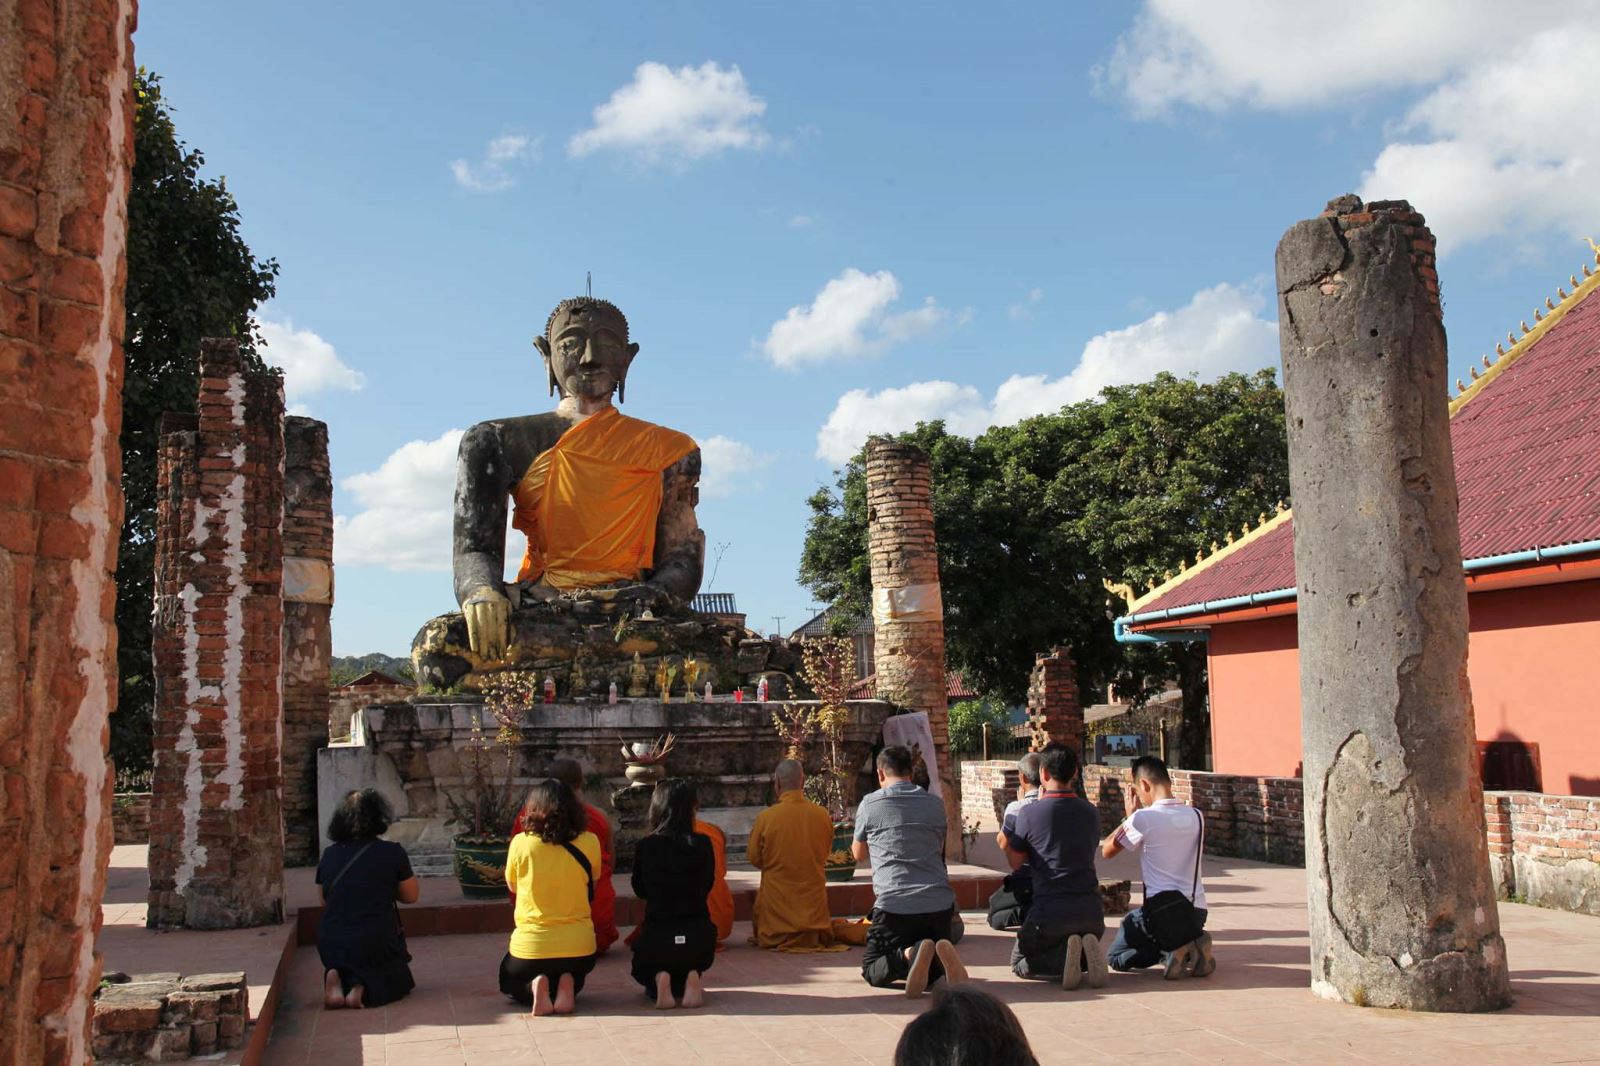 Du khách cầu nguyện trước tượng Phật tại Phia Vat.